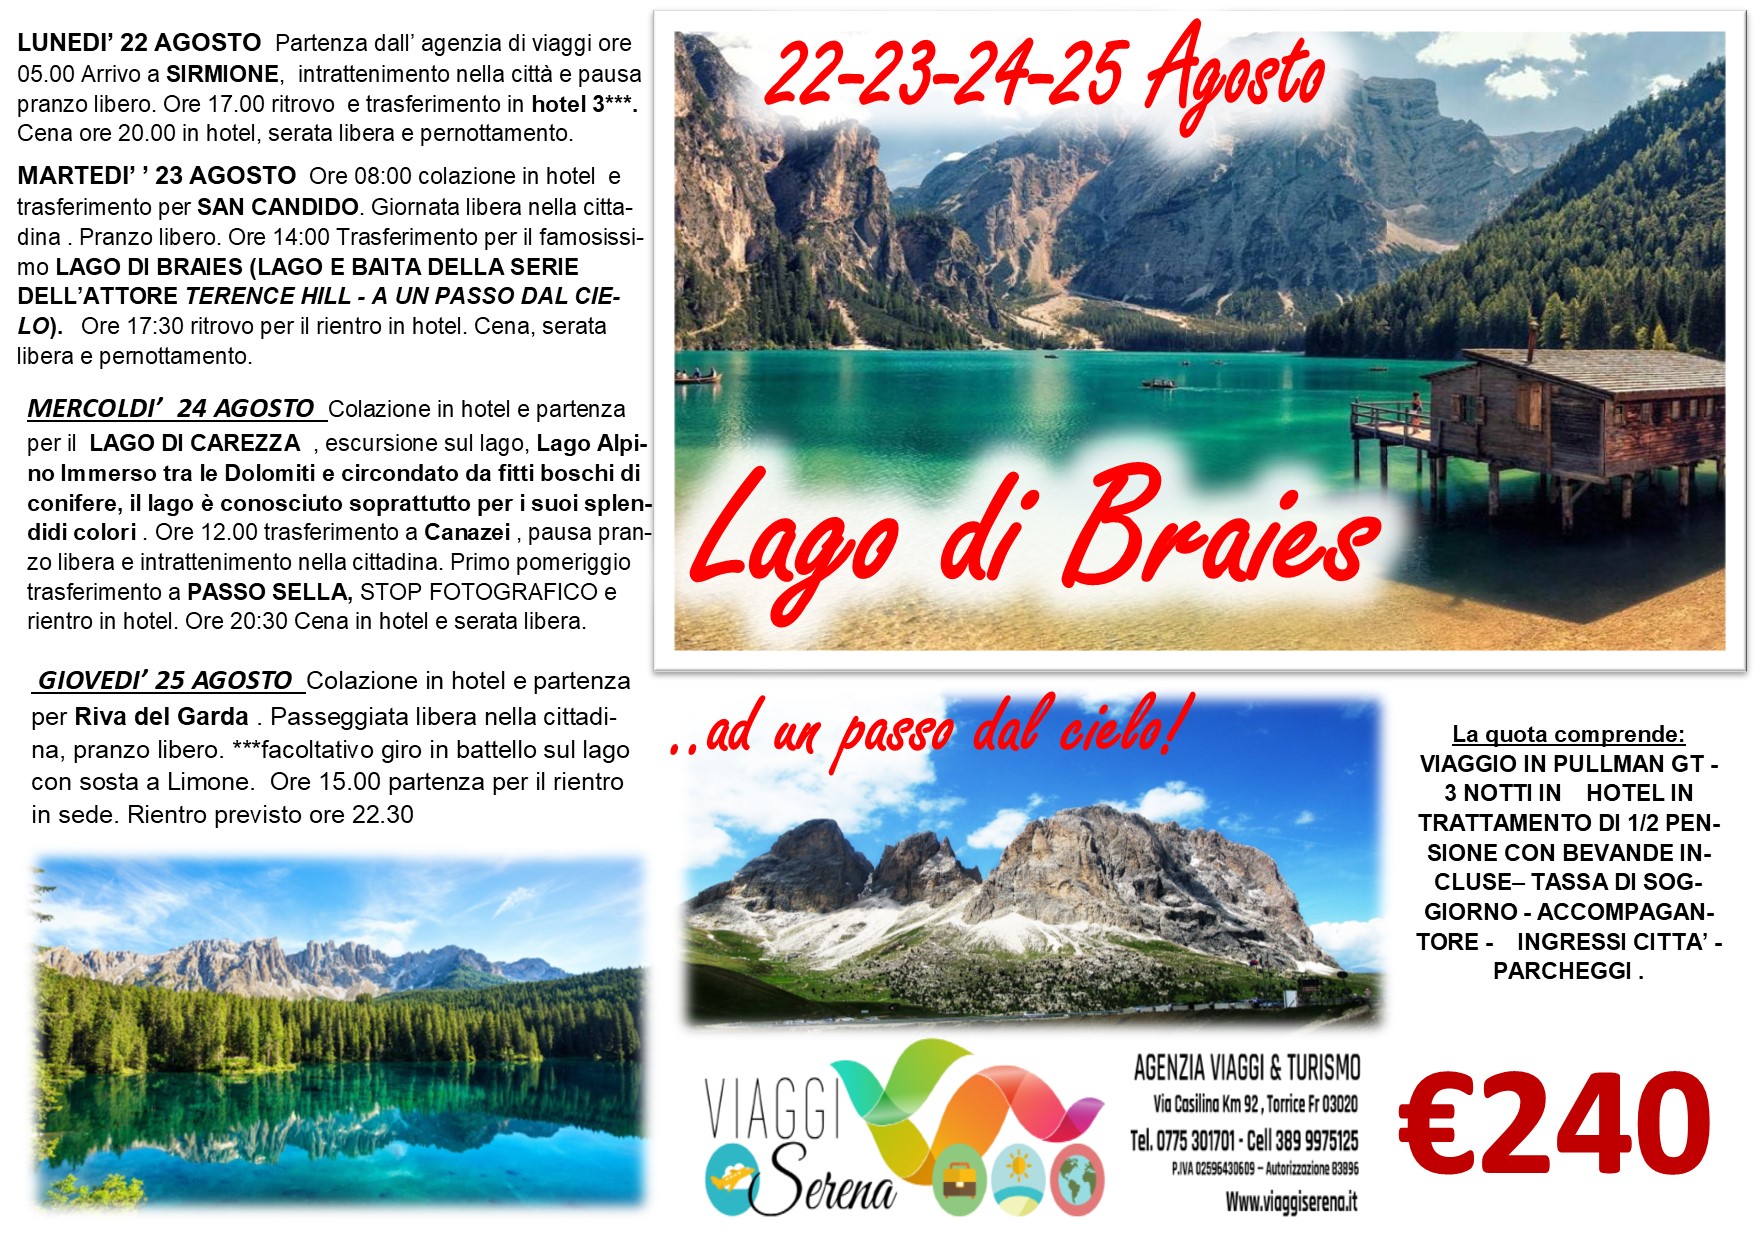 Viaggi di Gruppo: Lago di Braies & Lago di Carezza, Riva del Garda e Passo Sella 22-23-24-25 Agosto €240,00